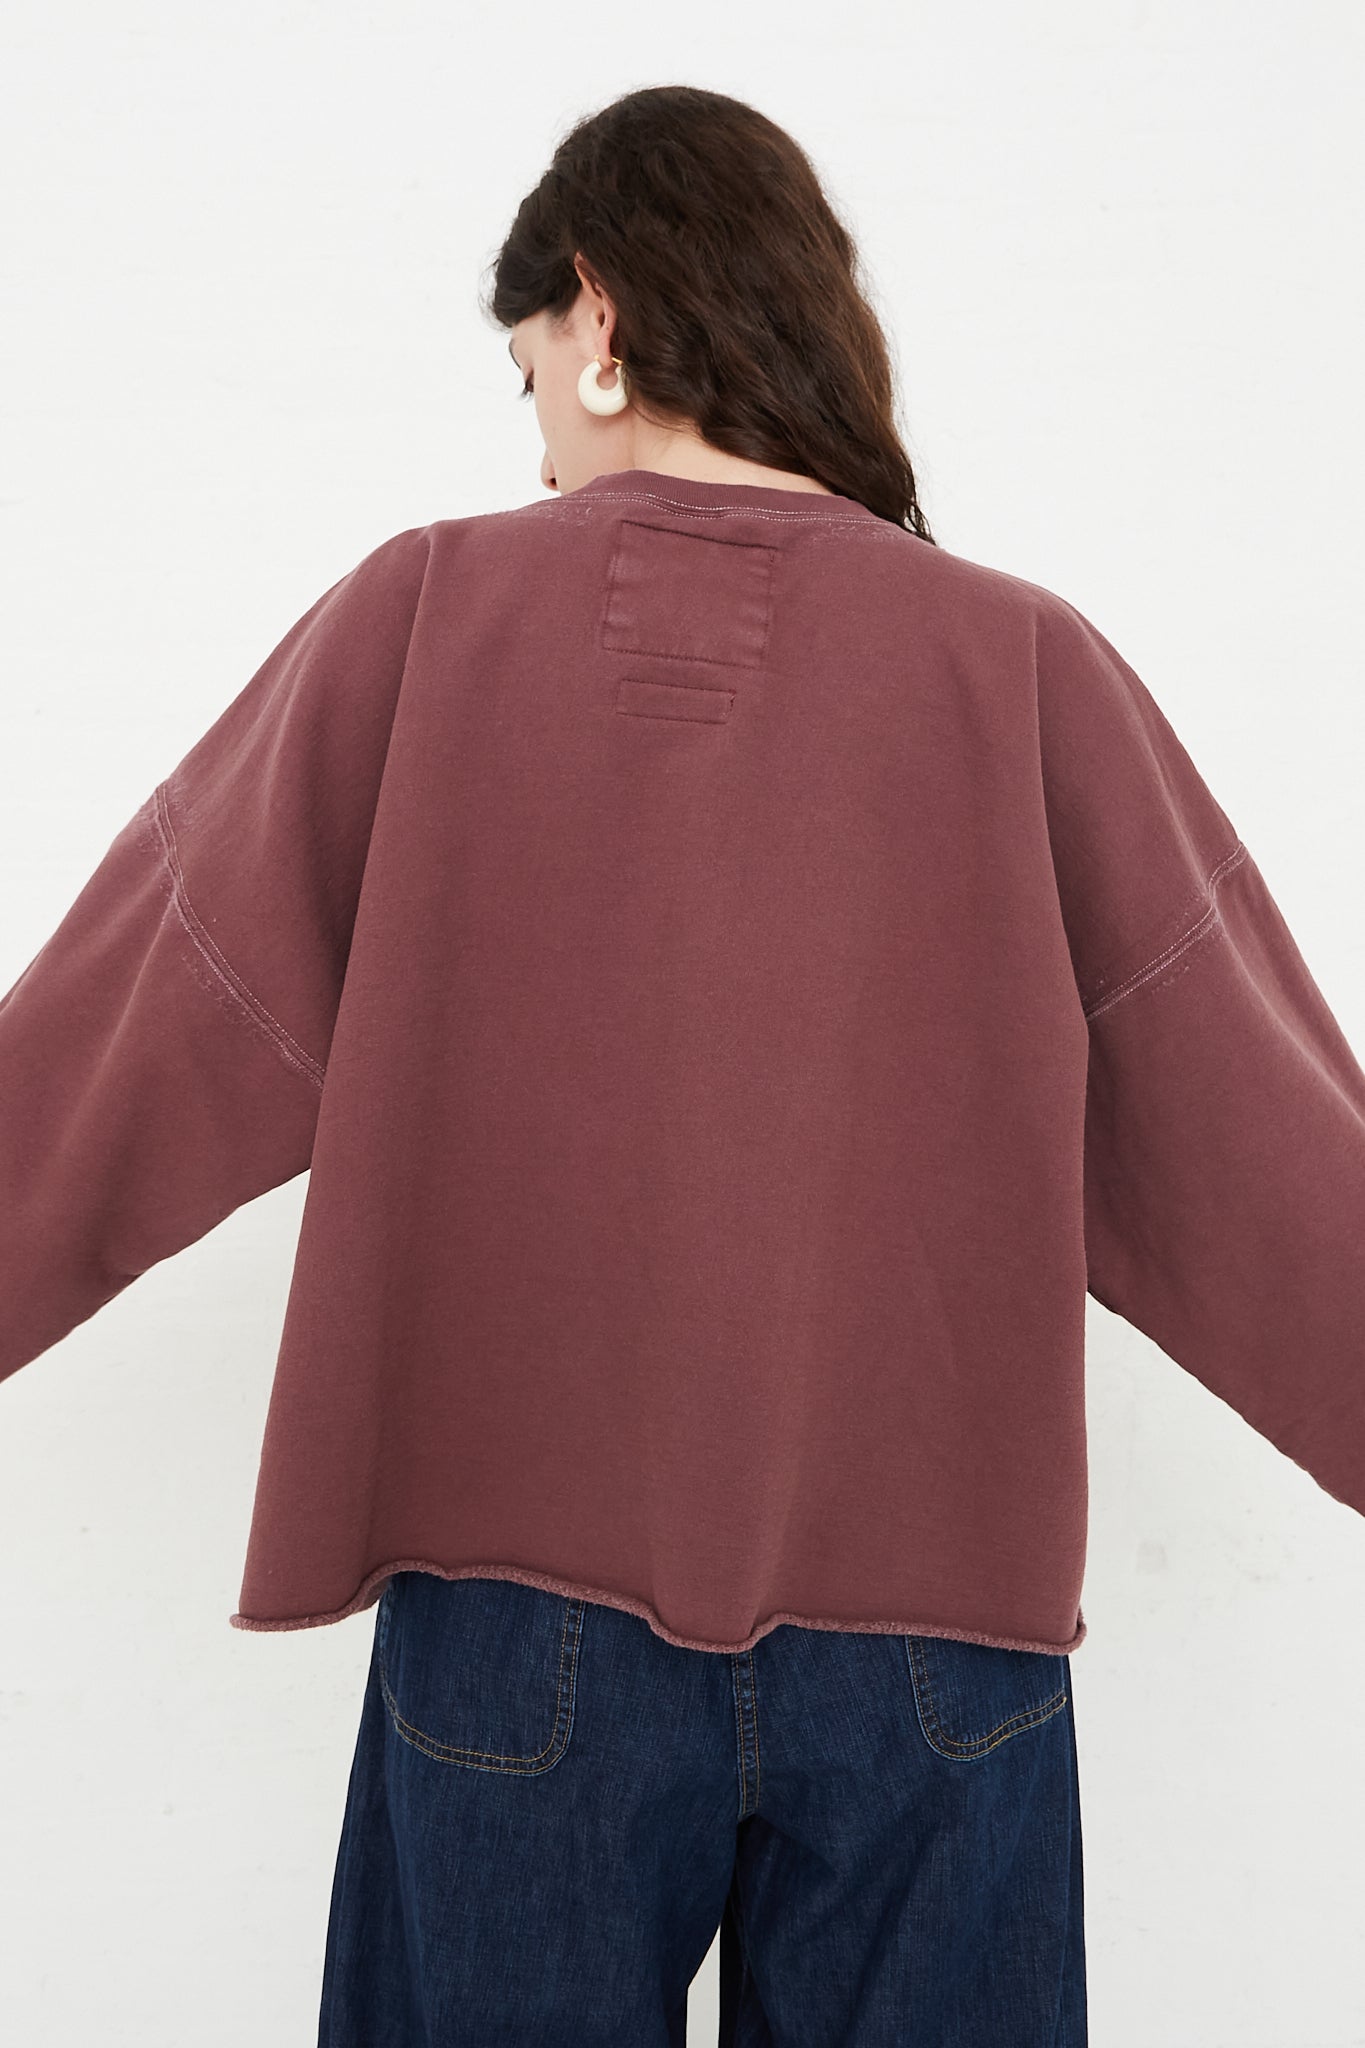 Rachel Comey Fonder Sweatshirt in Clay back detail